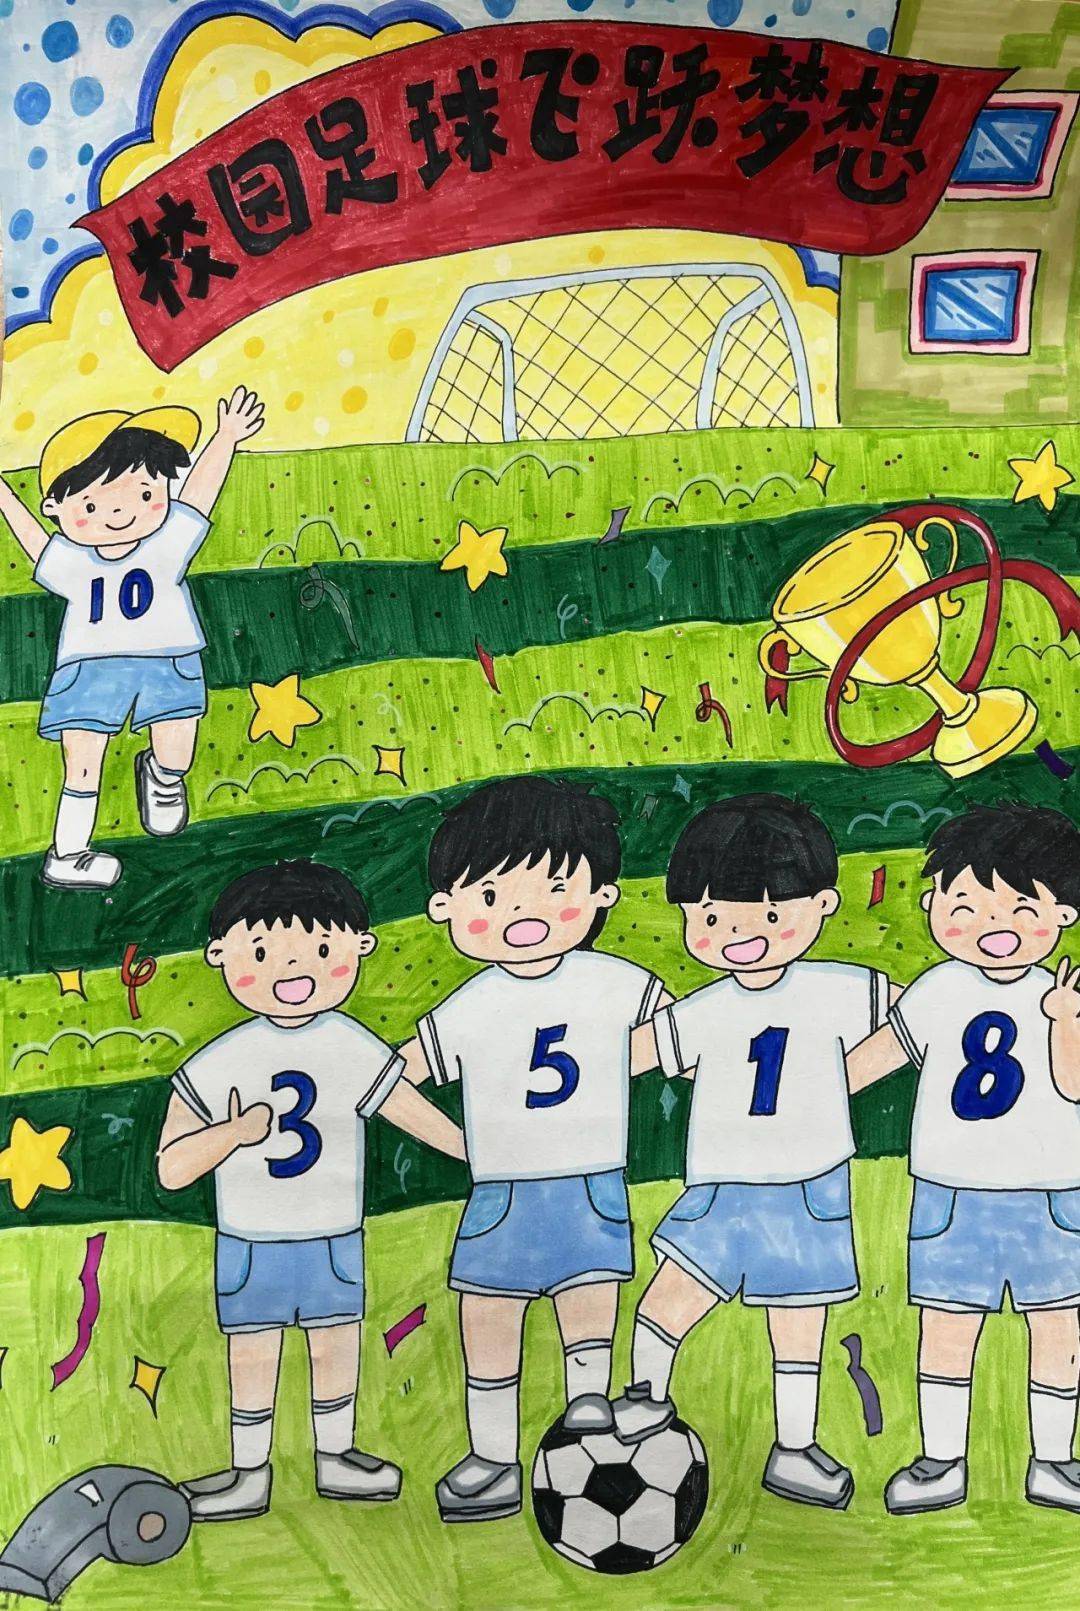 【世界儿童】南京市金陵小学足球班级联赛绘画竞赛获奖名单 ——足球